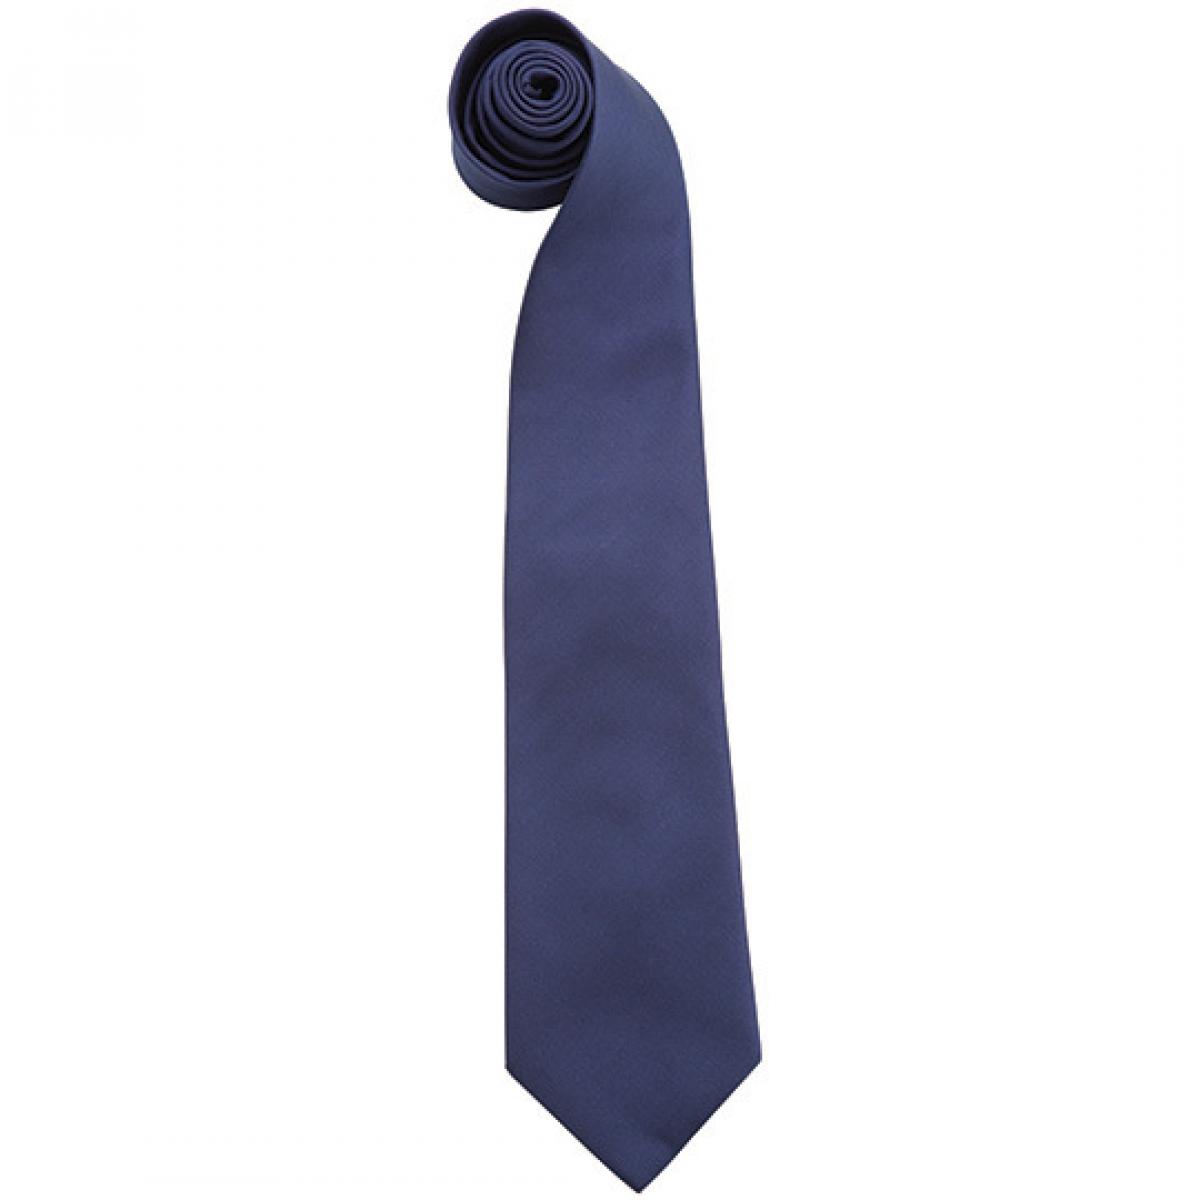 Hersteller: Premier Workwear Herstellernummer: PR765 Artikelbezeichnung: Krawatte Uni-Fashion / Colours Farbe: Navy (ca. Pantone 533C)